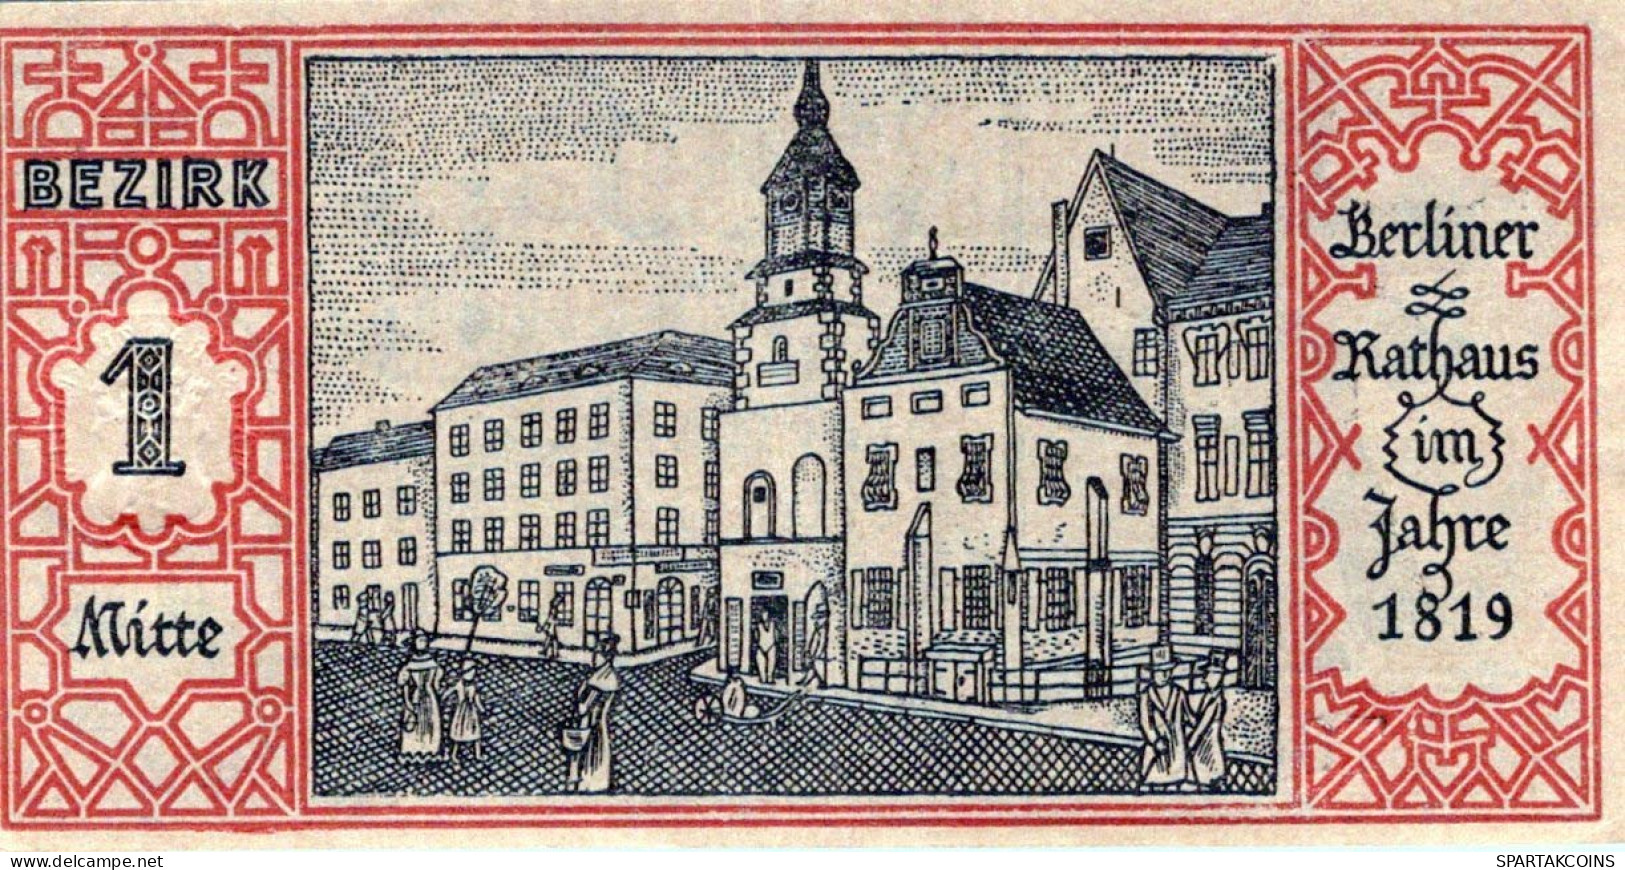 50 PFENNIG 1921 Stadt BERLIN UNC DEUTSCHLAND Notgeld Banknote #PH731 - [11] Emissions Locales